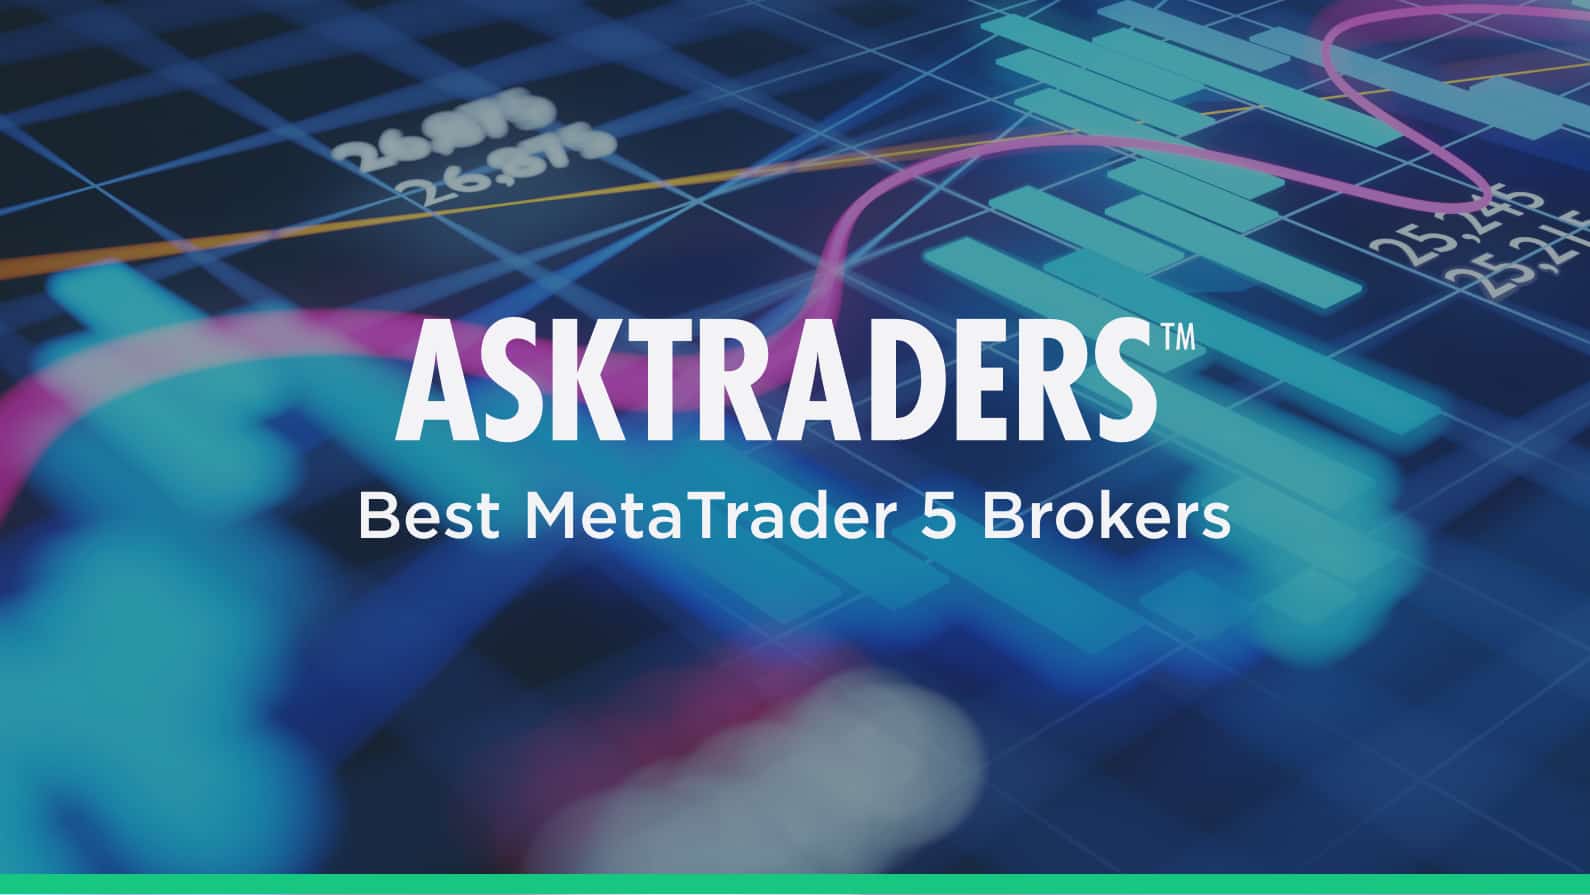 5 Best MT5 Brokers (2020) - MetaTrader 5 Brokers ...